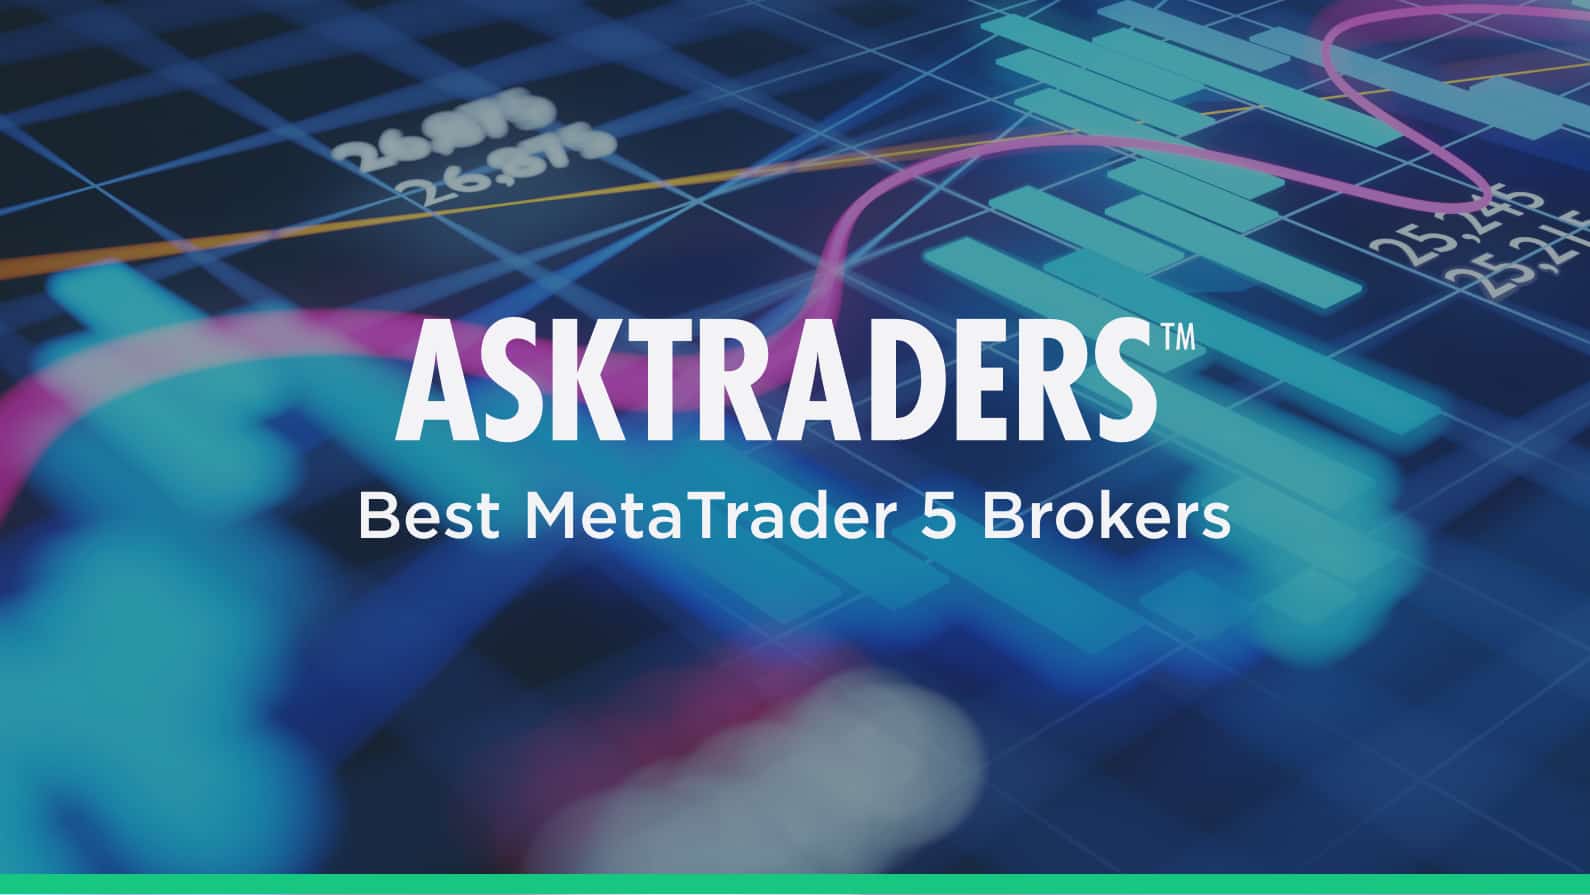 5 Best MT5 Brokers (2020) - MetaTrader 5 Brokers ...